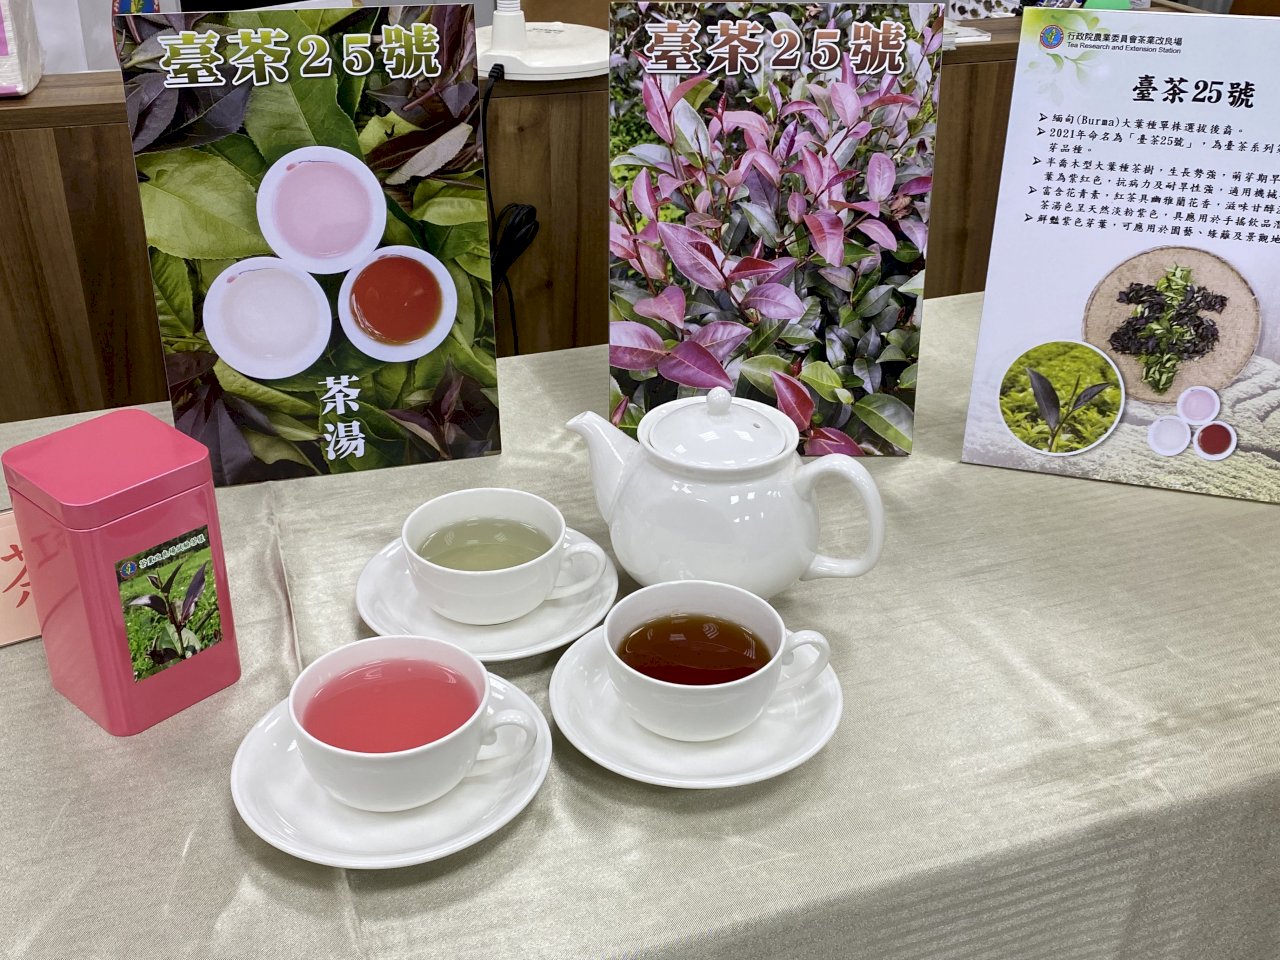 天然粉紅色茶湯來了！歷經30年選育 全台第一株命名的紫芽茶樹問世